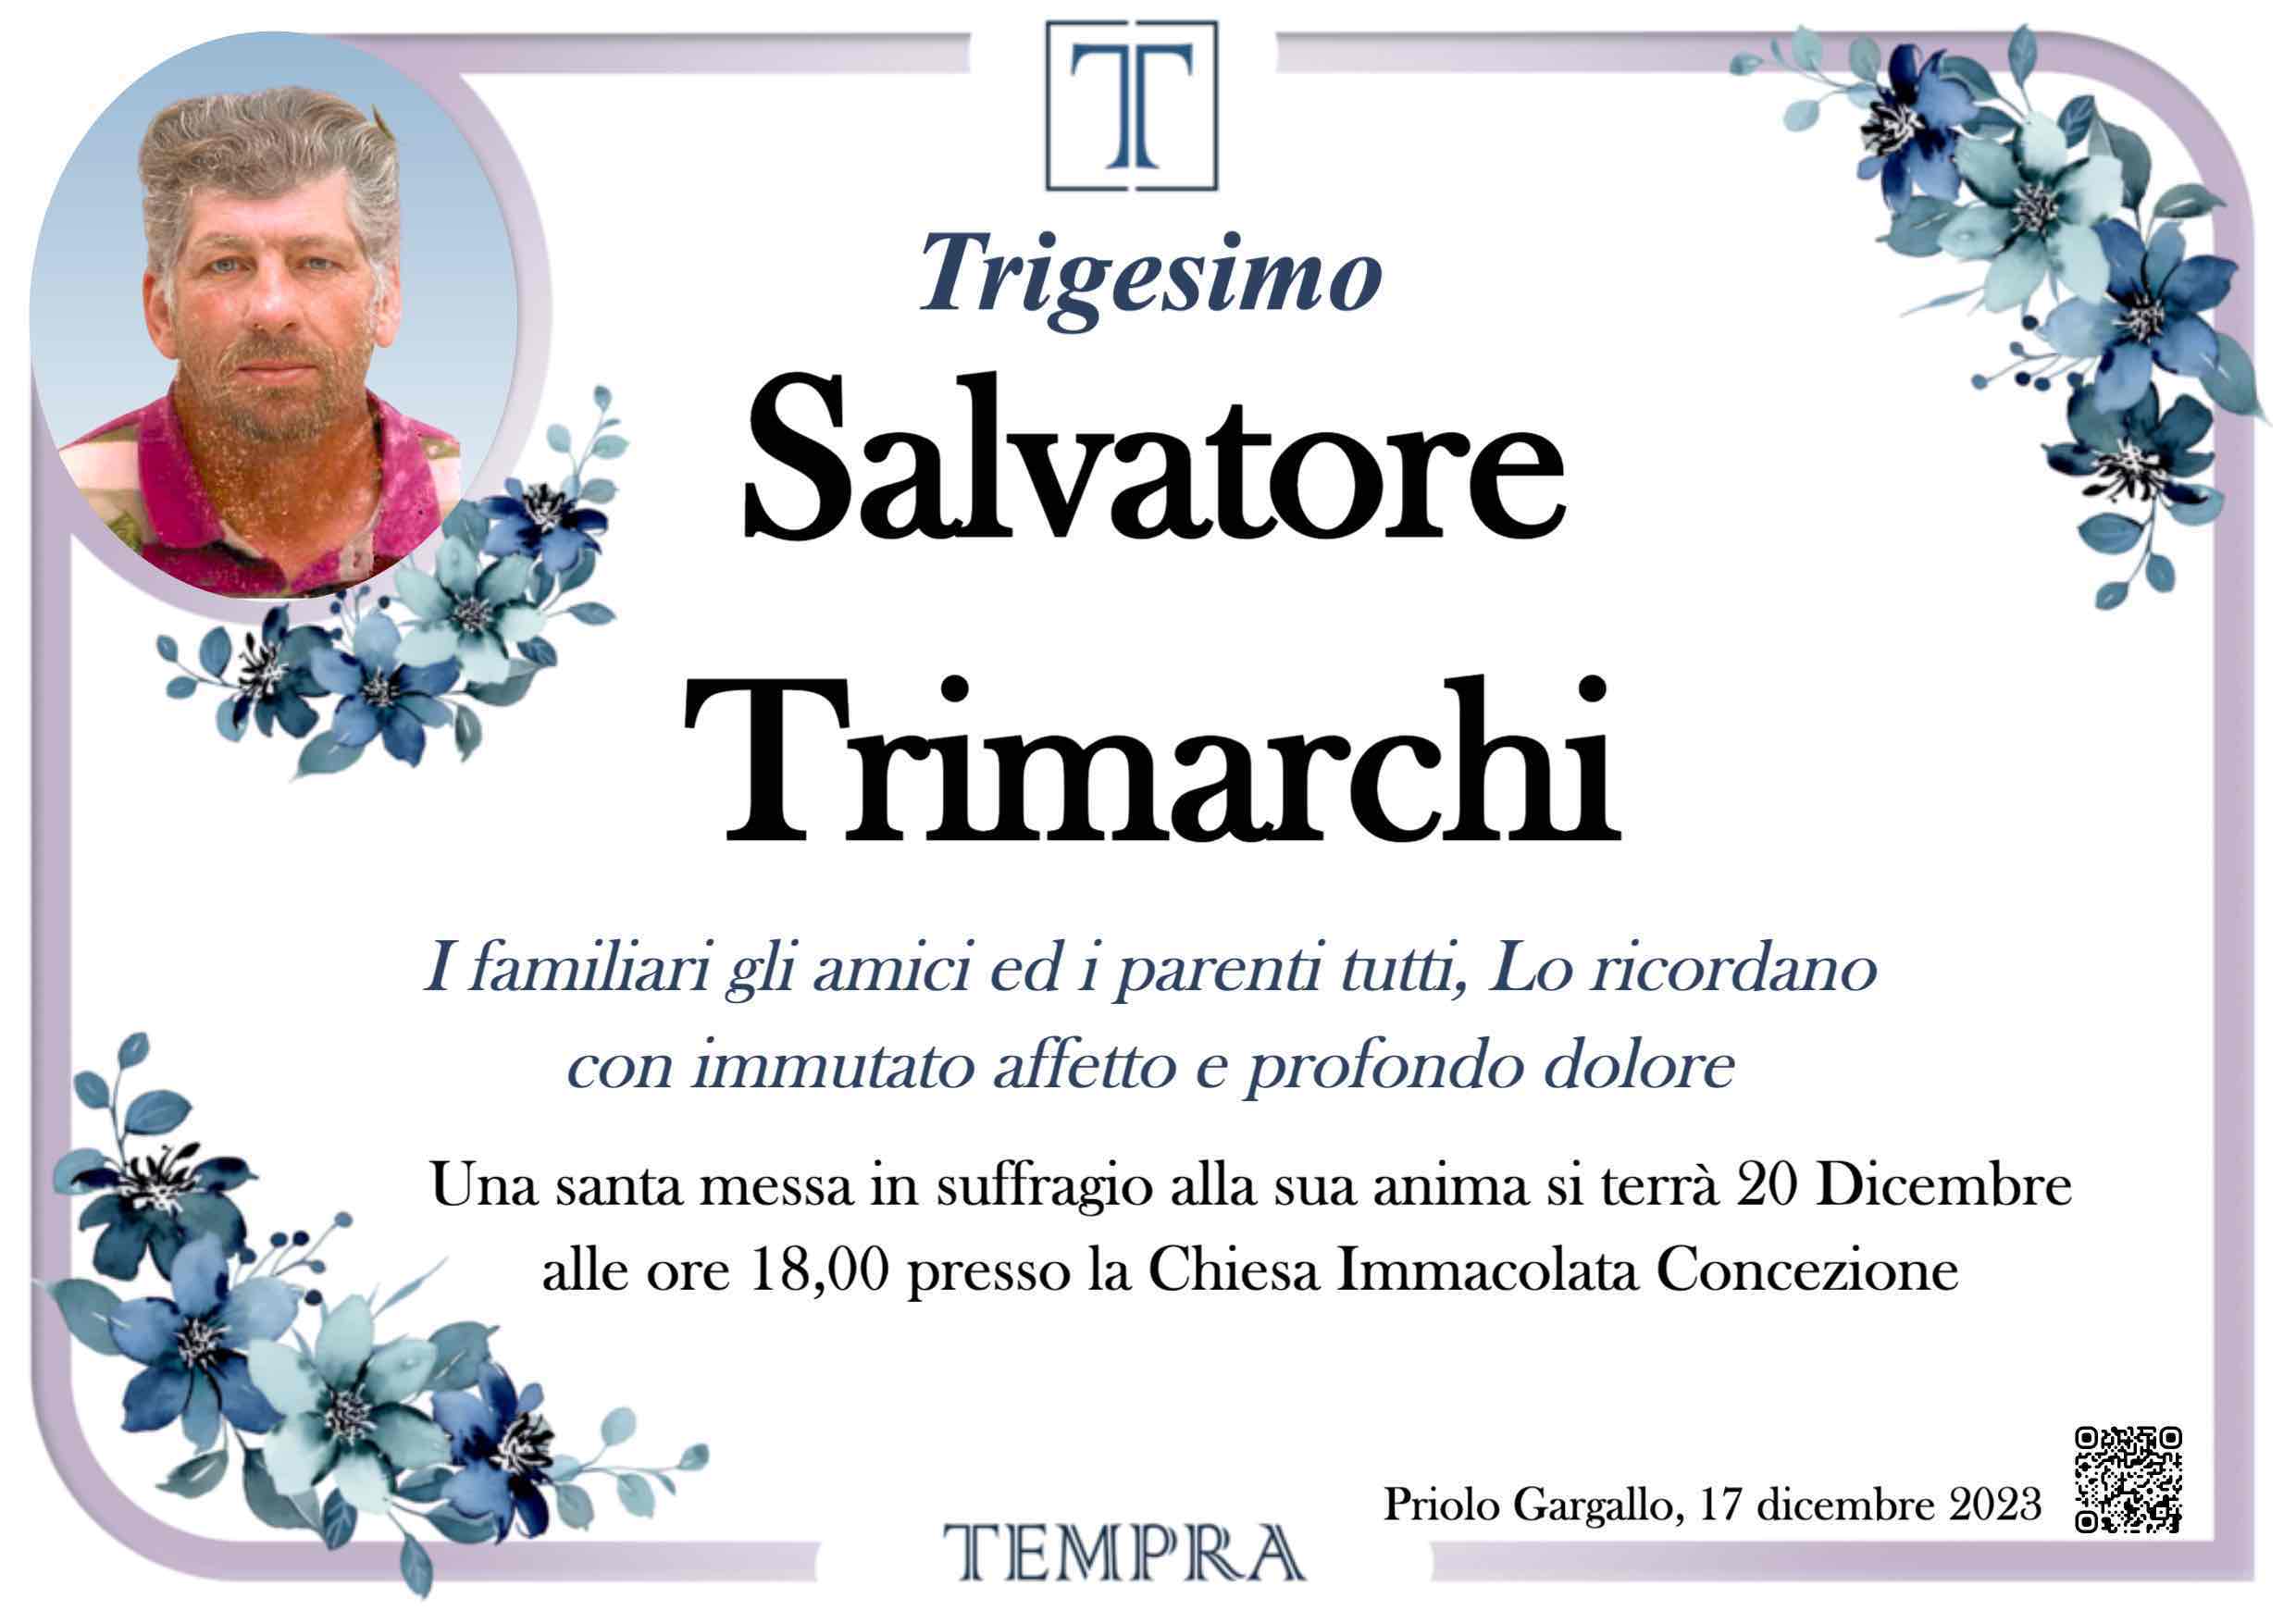 Salvatore Trimarchi